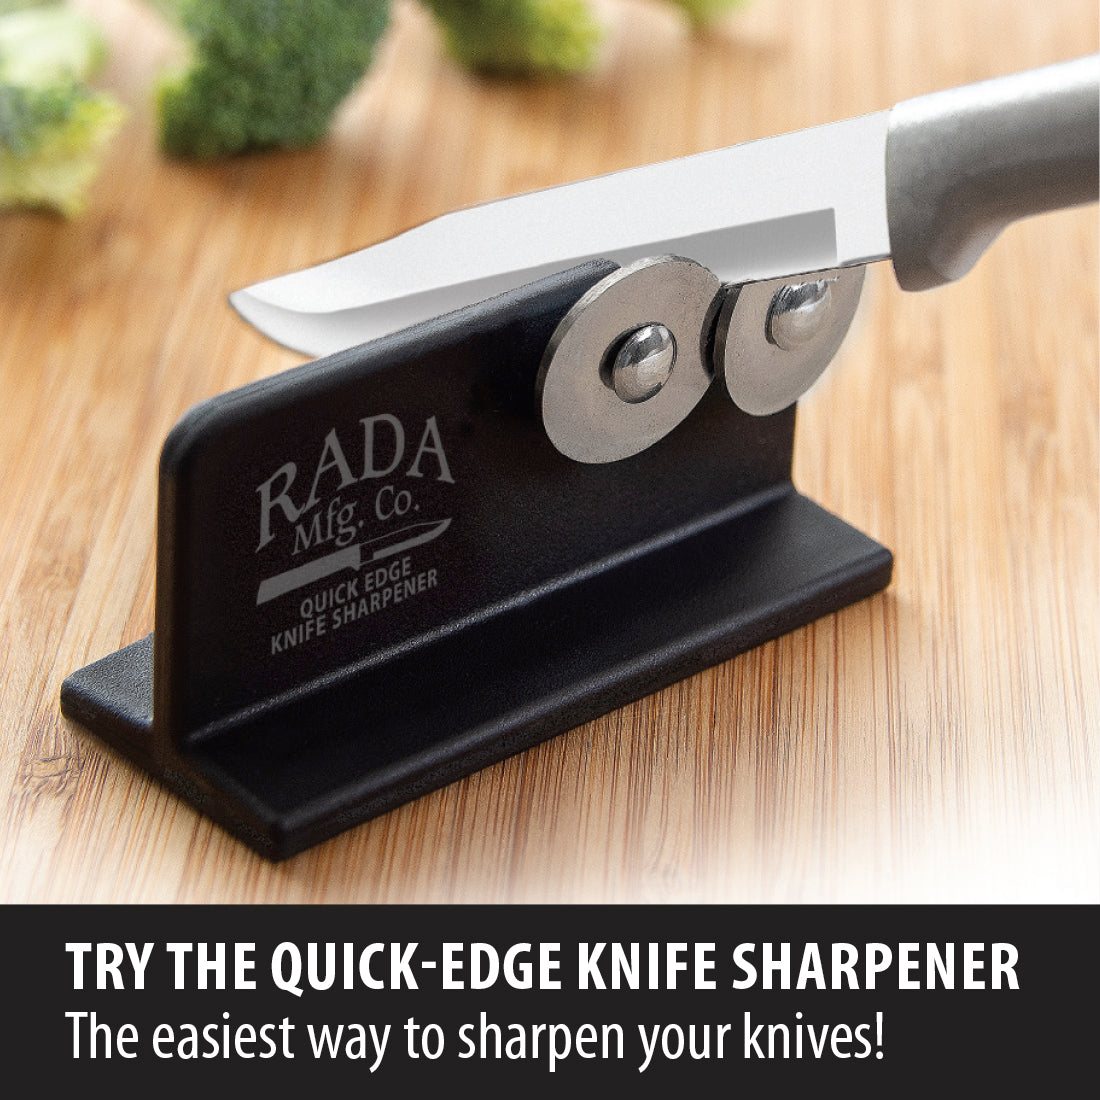 The Best Knife Sharpener for 2024